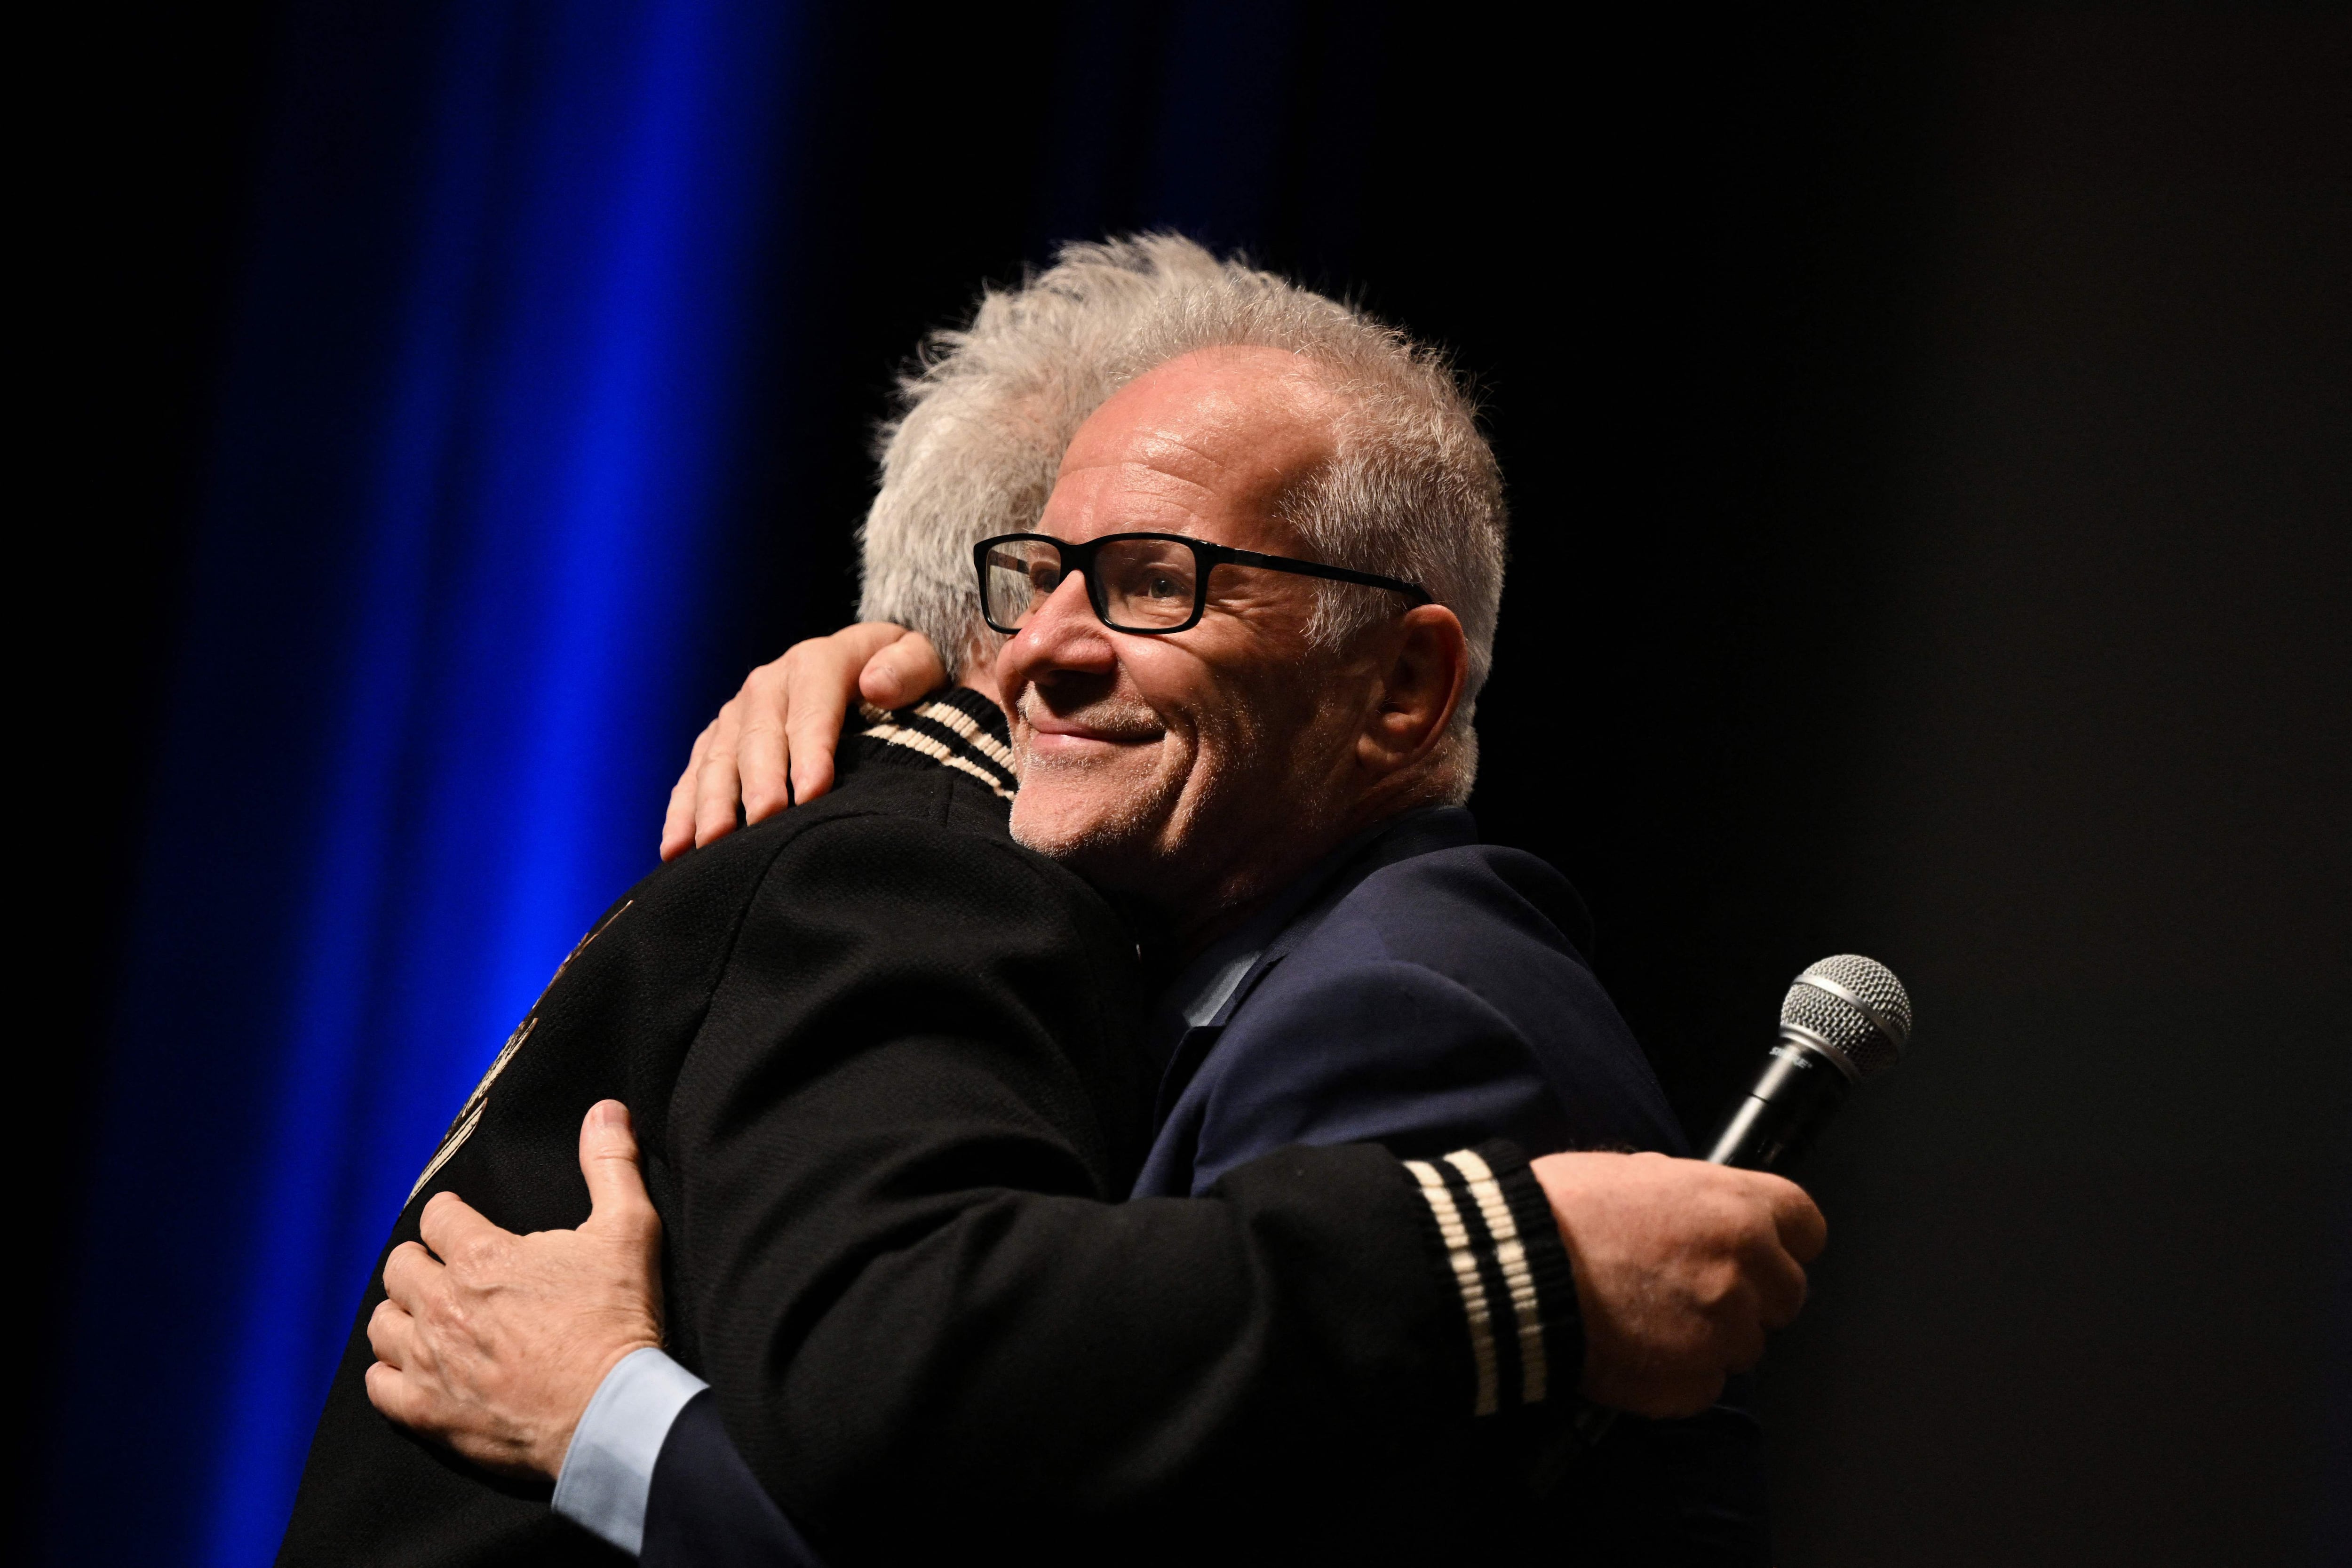 Pedro Almodóvar y el delegado general de Cannes, Thierry Frémaux, se abrazan el miércoles en la presentación de 'Extraña forma de vida'.